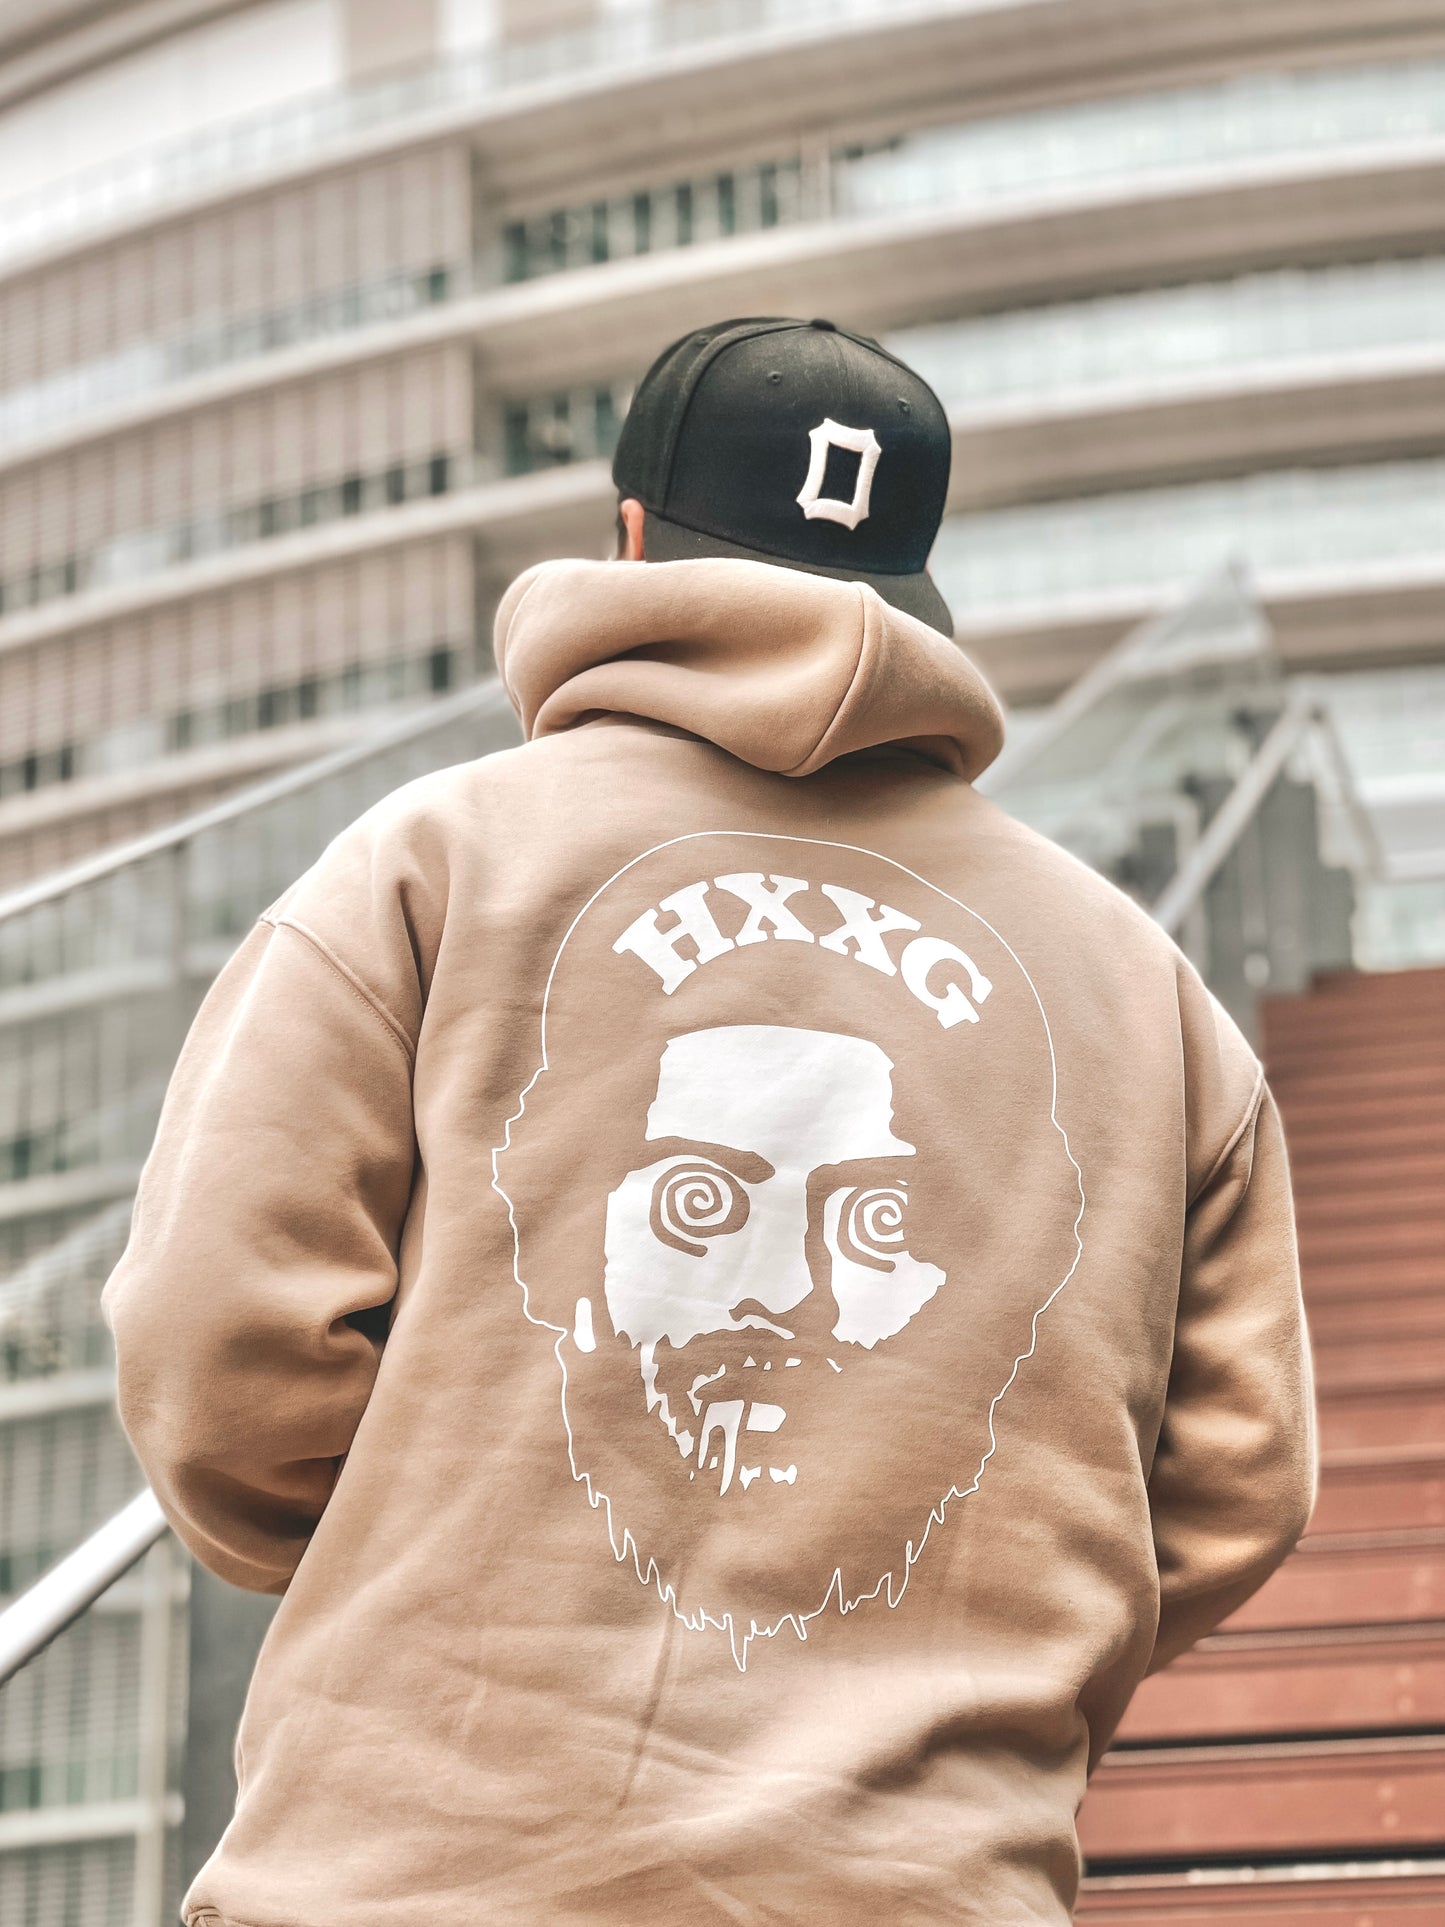 HXXG "GURUGURU" hoodie【限定】